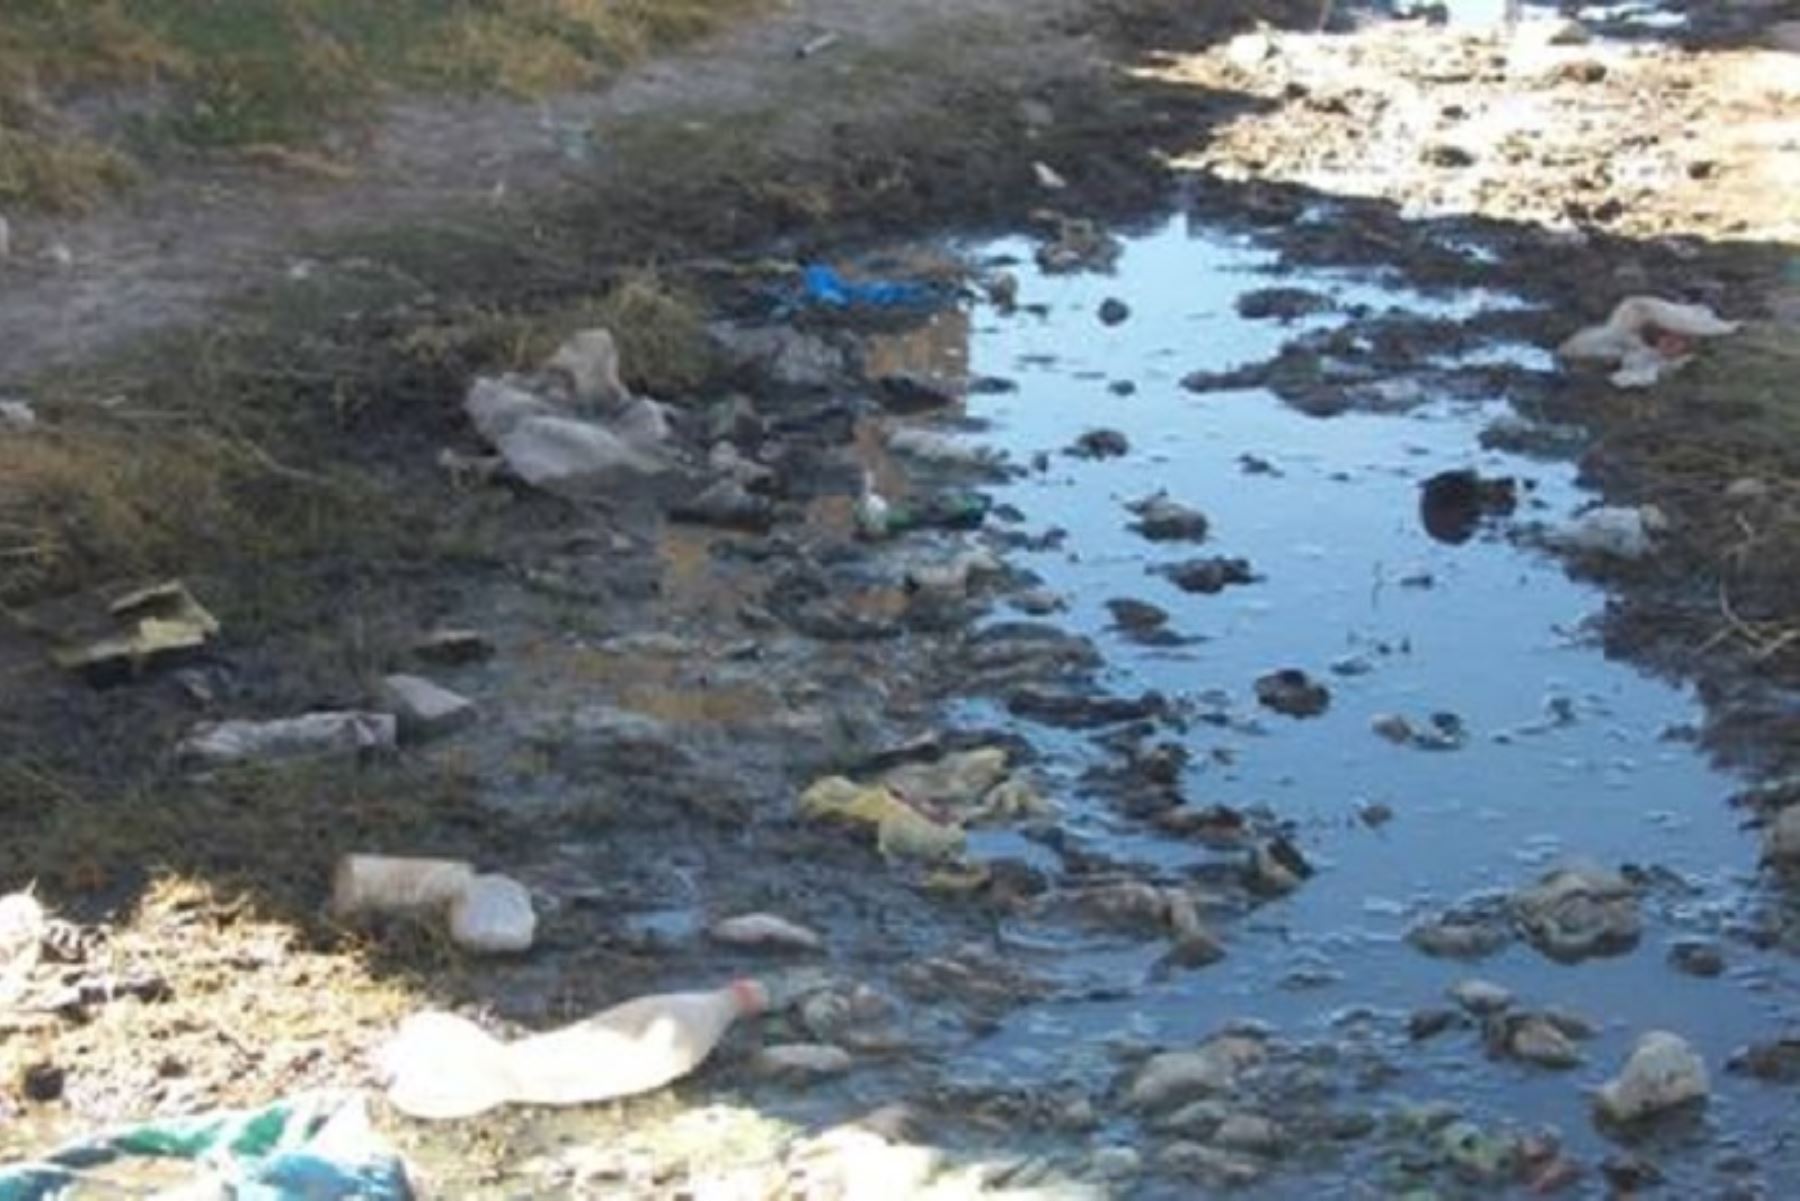 El Ejecutivo declaró el estado de emergencia por peligro inminente ante contaminación de agua para consumo humano, en los distritos de Coata, Huata y Capachica de la provincia de Puno y en los distritos de Caracoto y Juliaca de la provincia de San Román, departamento de Puno.